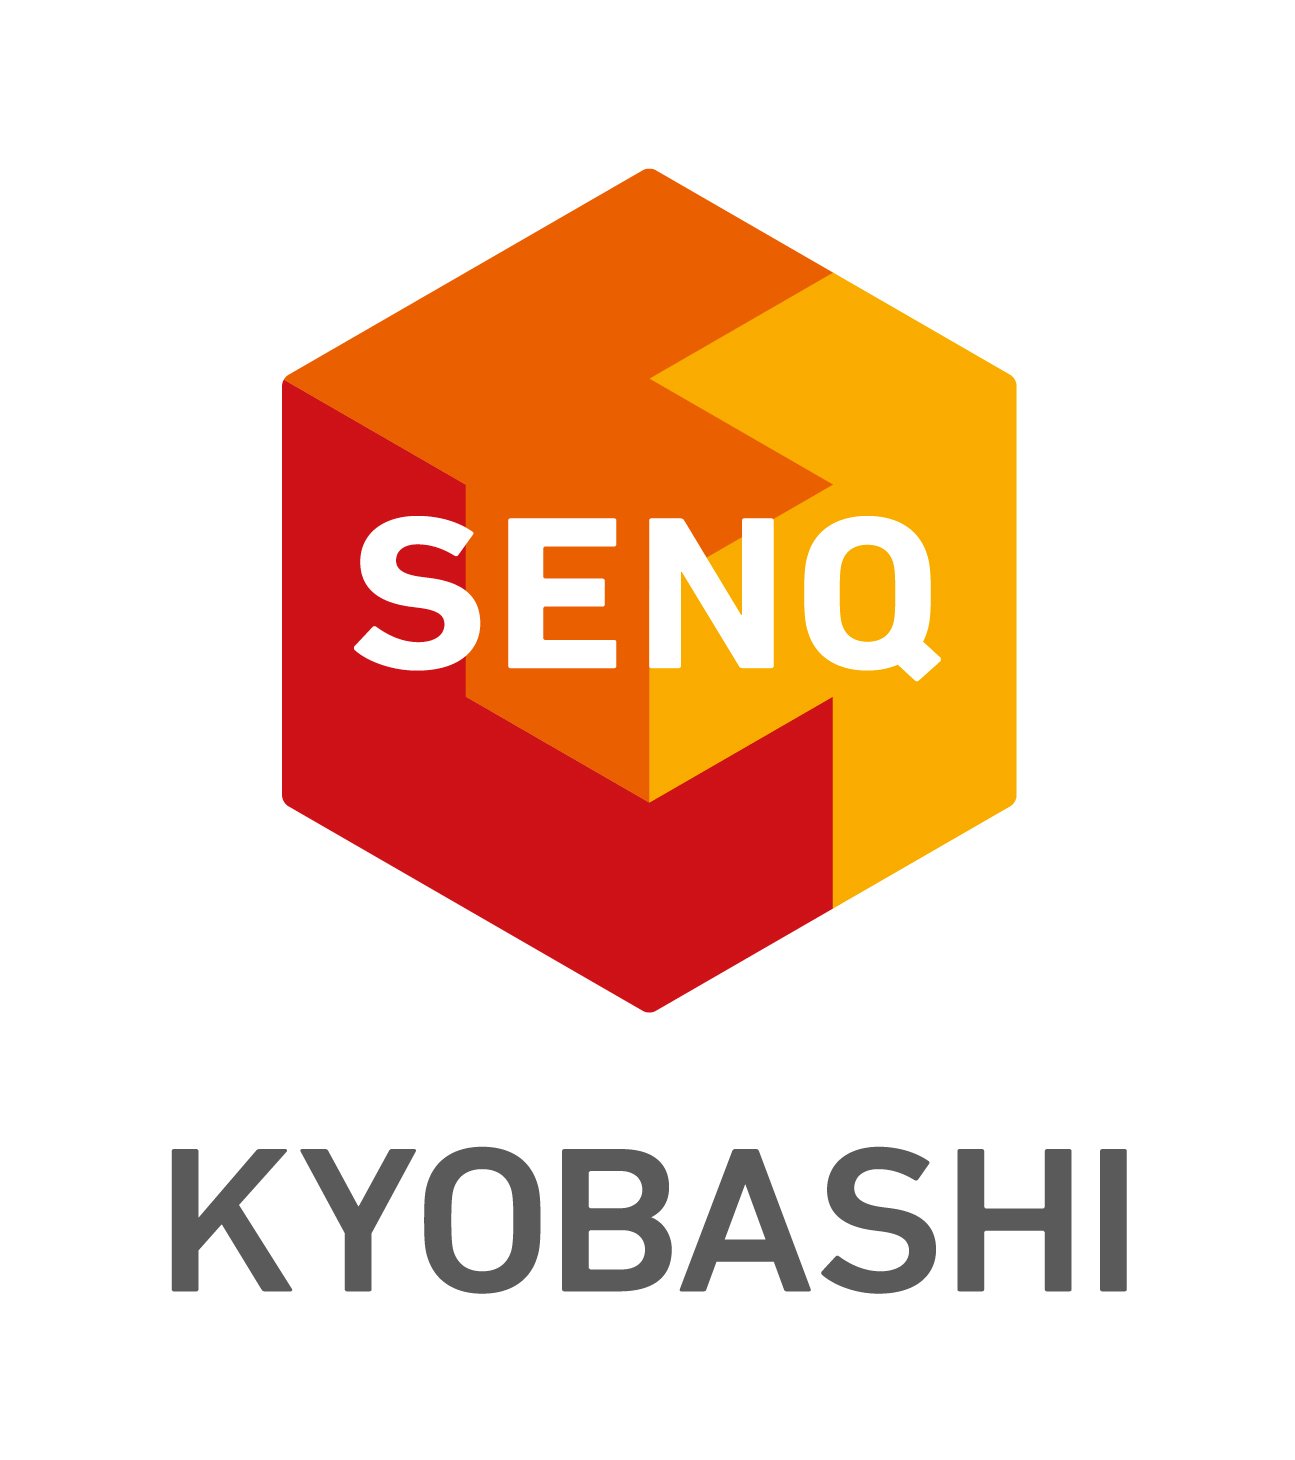 04_SENQ_brandlogo_KYOBASHI_lockup_vertical